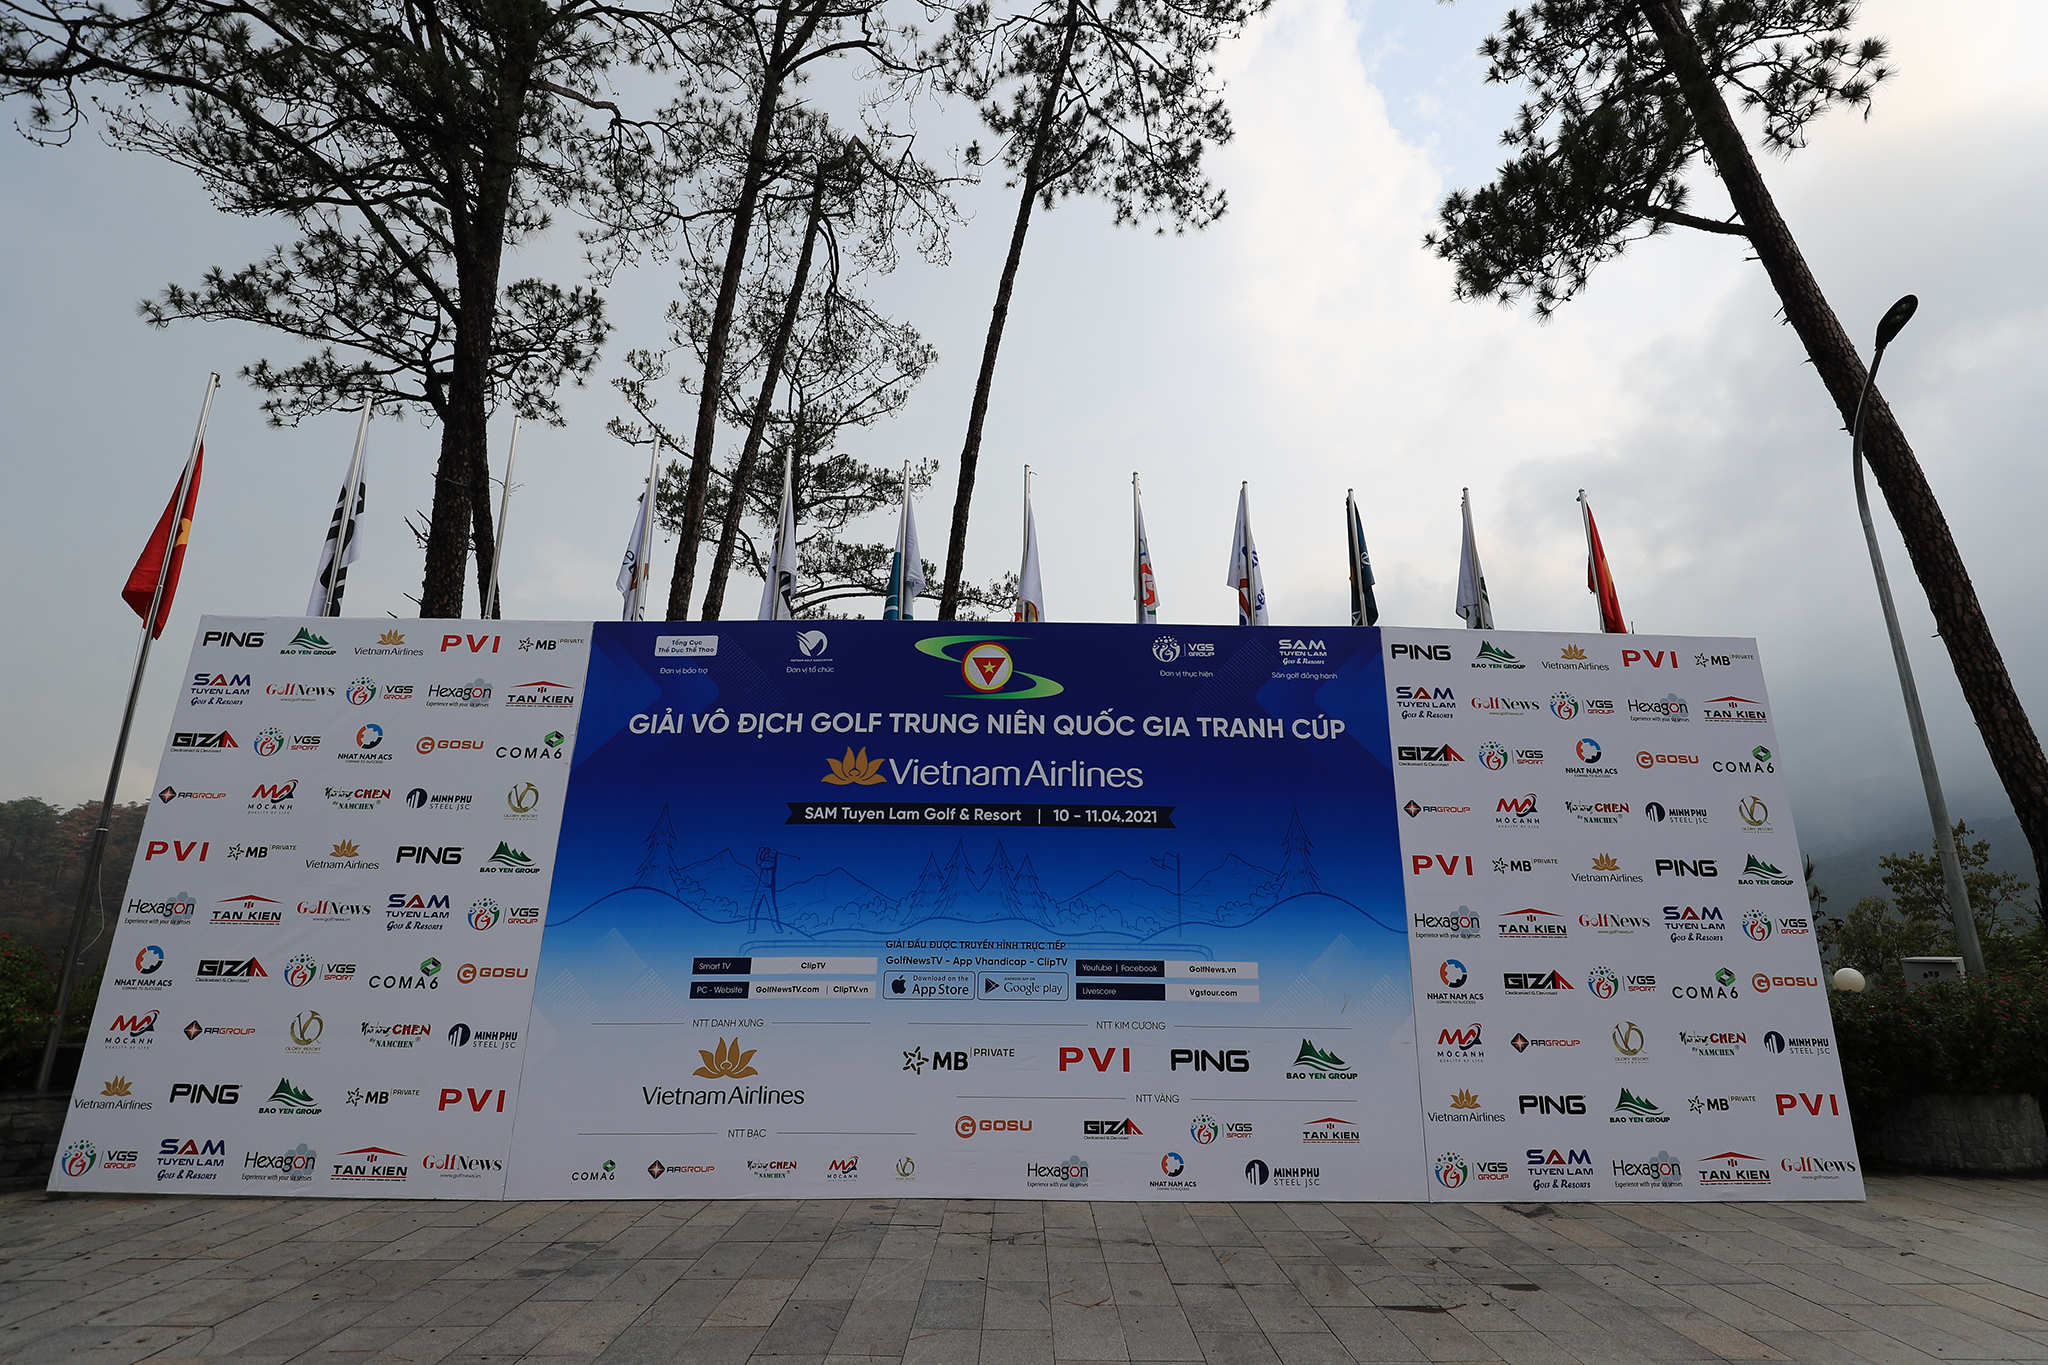 Cơ cấu giải thưởng của giải Vô địch golf Trung niên Quốc gia 2021 tranh cúp Vietnam Airlines